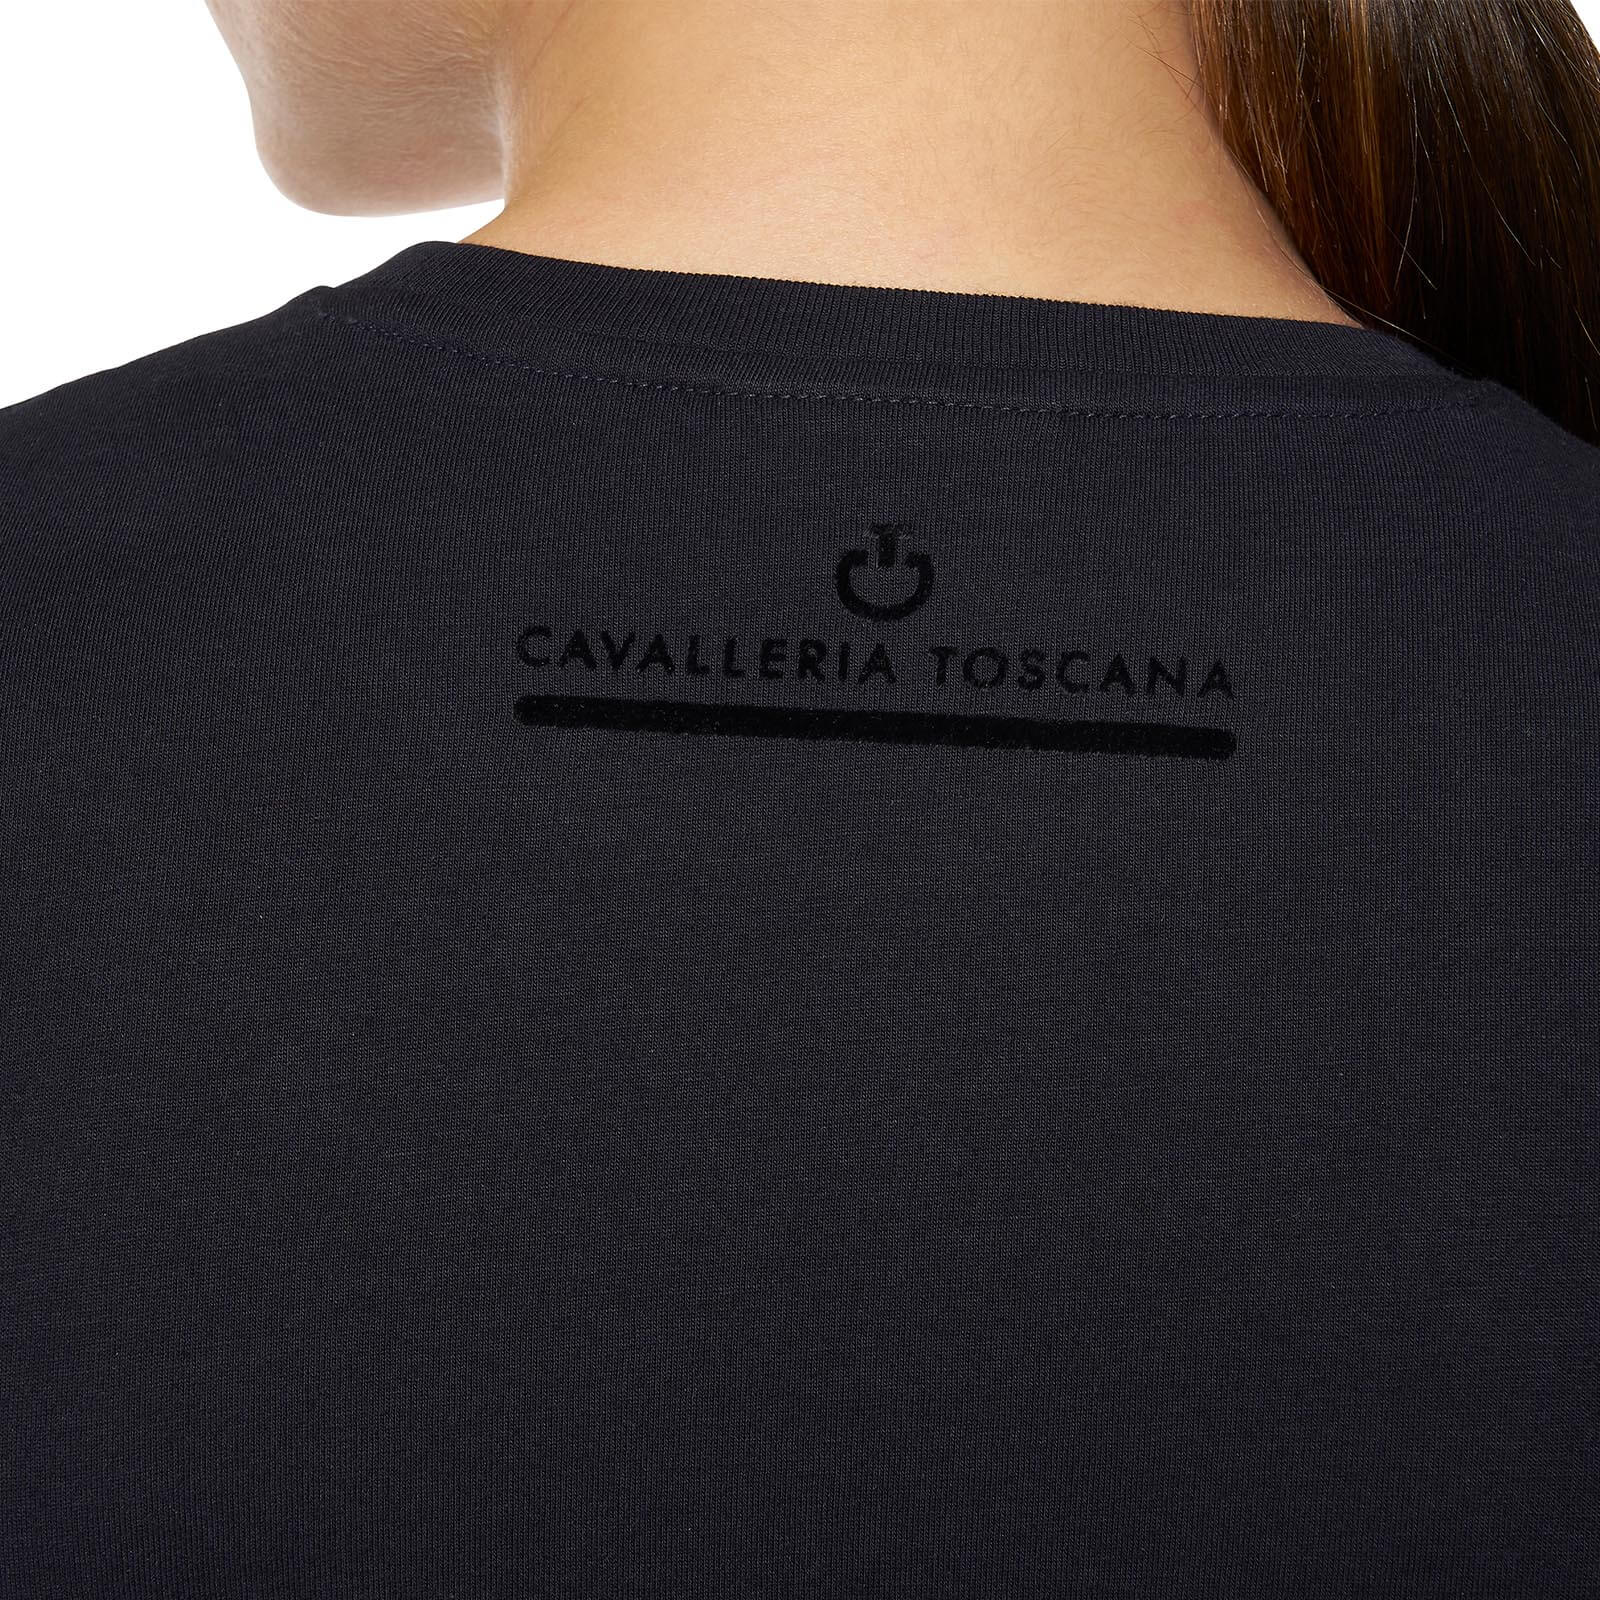 CAVALLERIA TOSCANA bequemes Damen T-Shirt mit Mini CT Flock - navy - M - 4